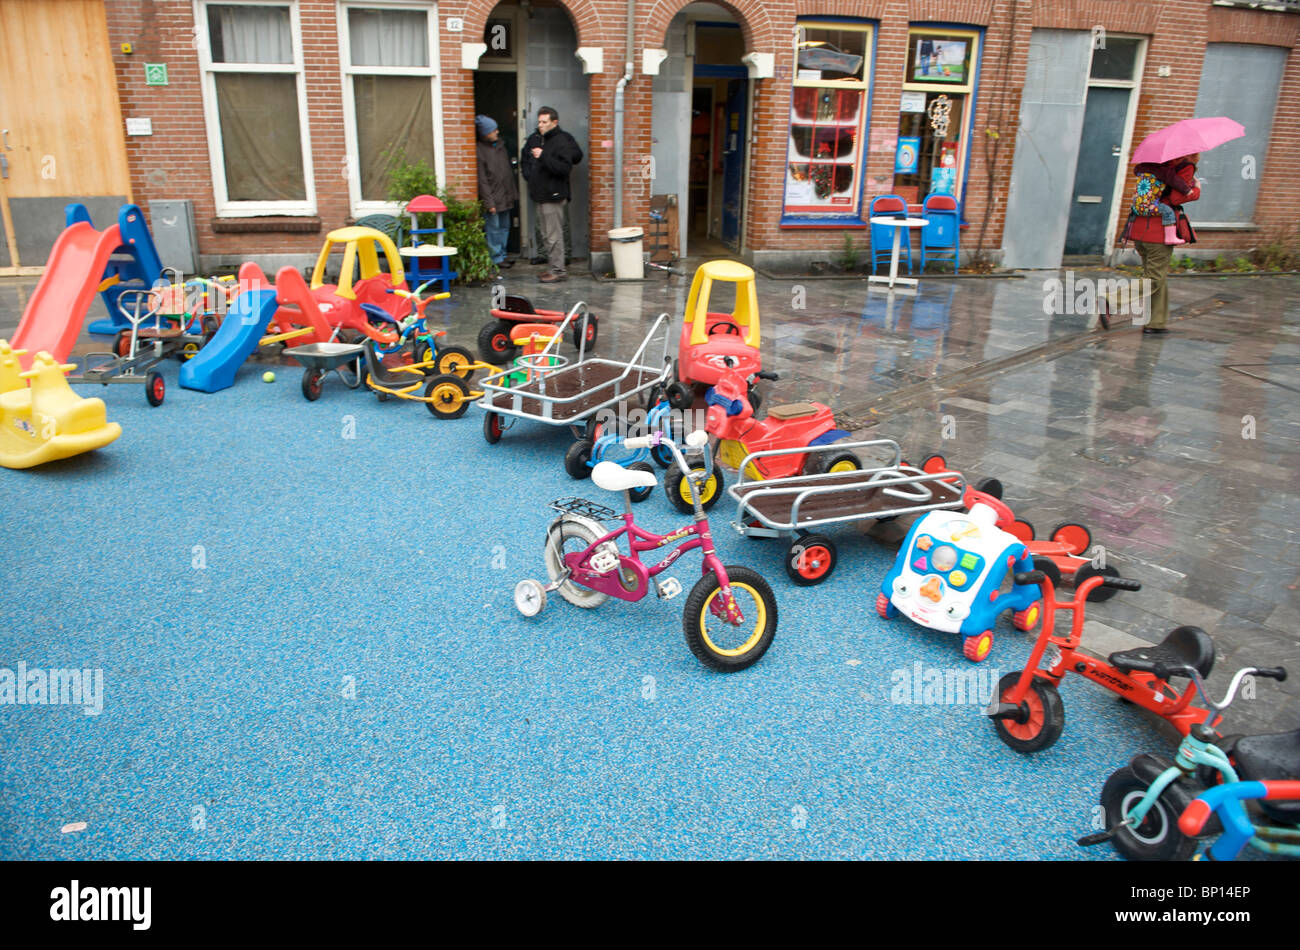 Amsterdam, Oud-West, van Beuningenstraat, Speelgoed van kinderspeelplaats Stockfoto